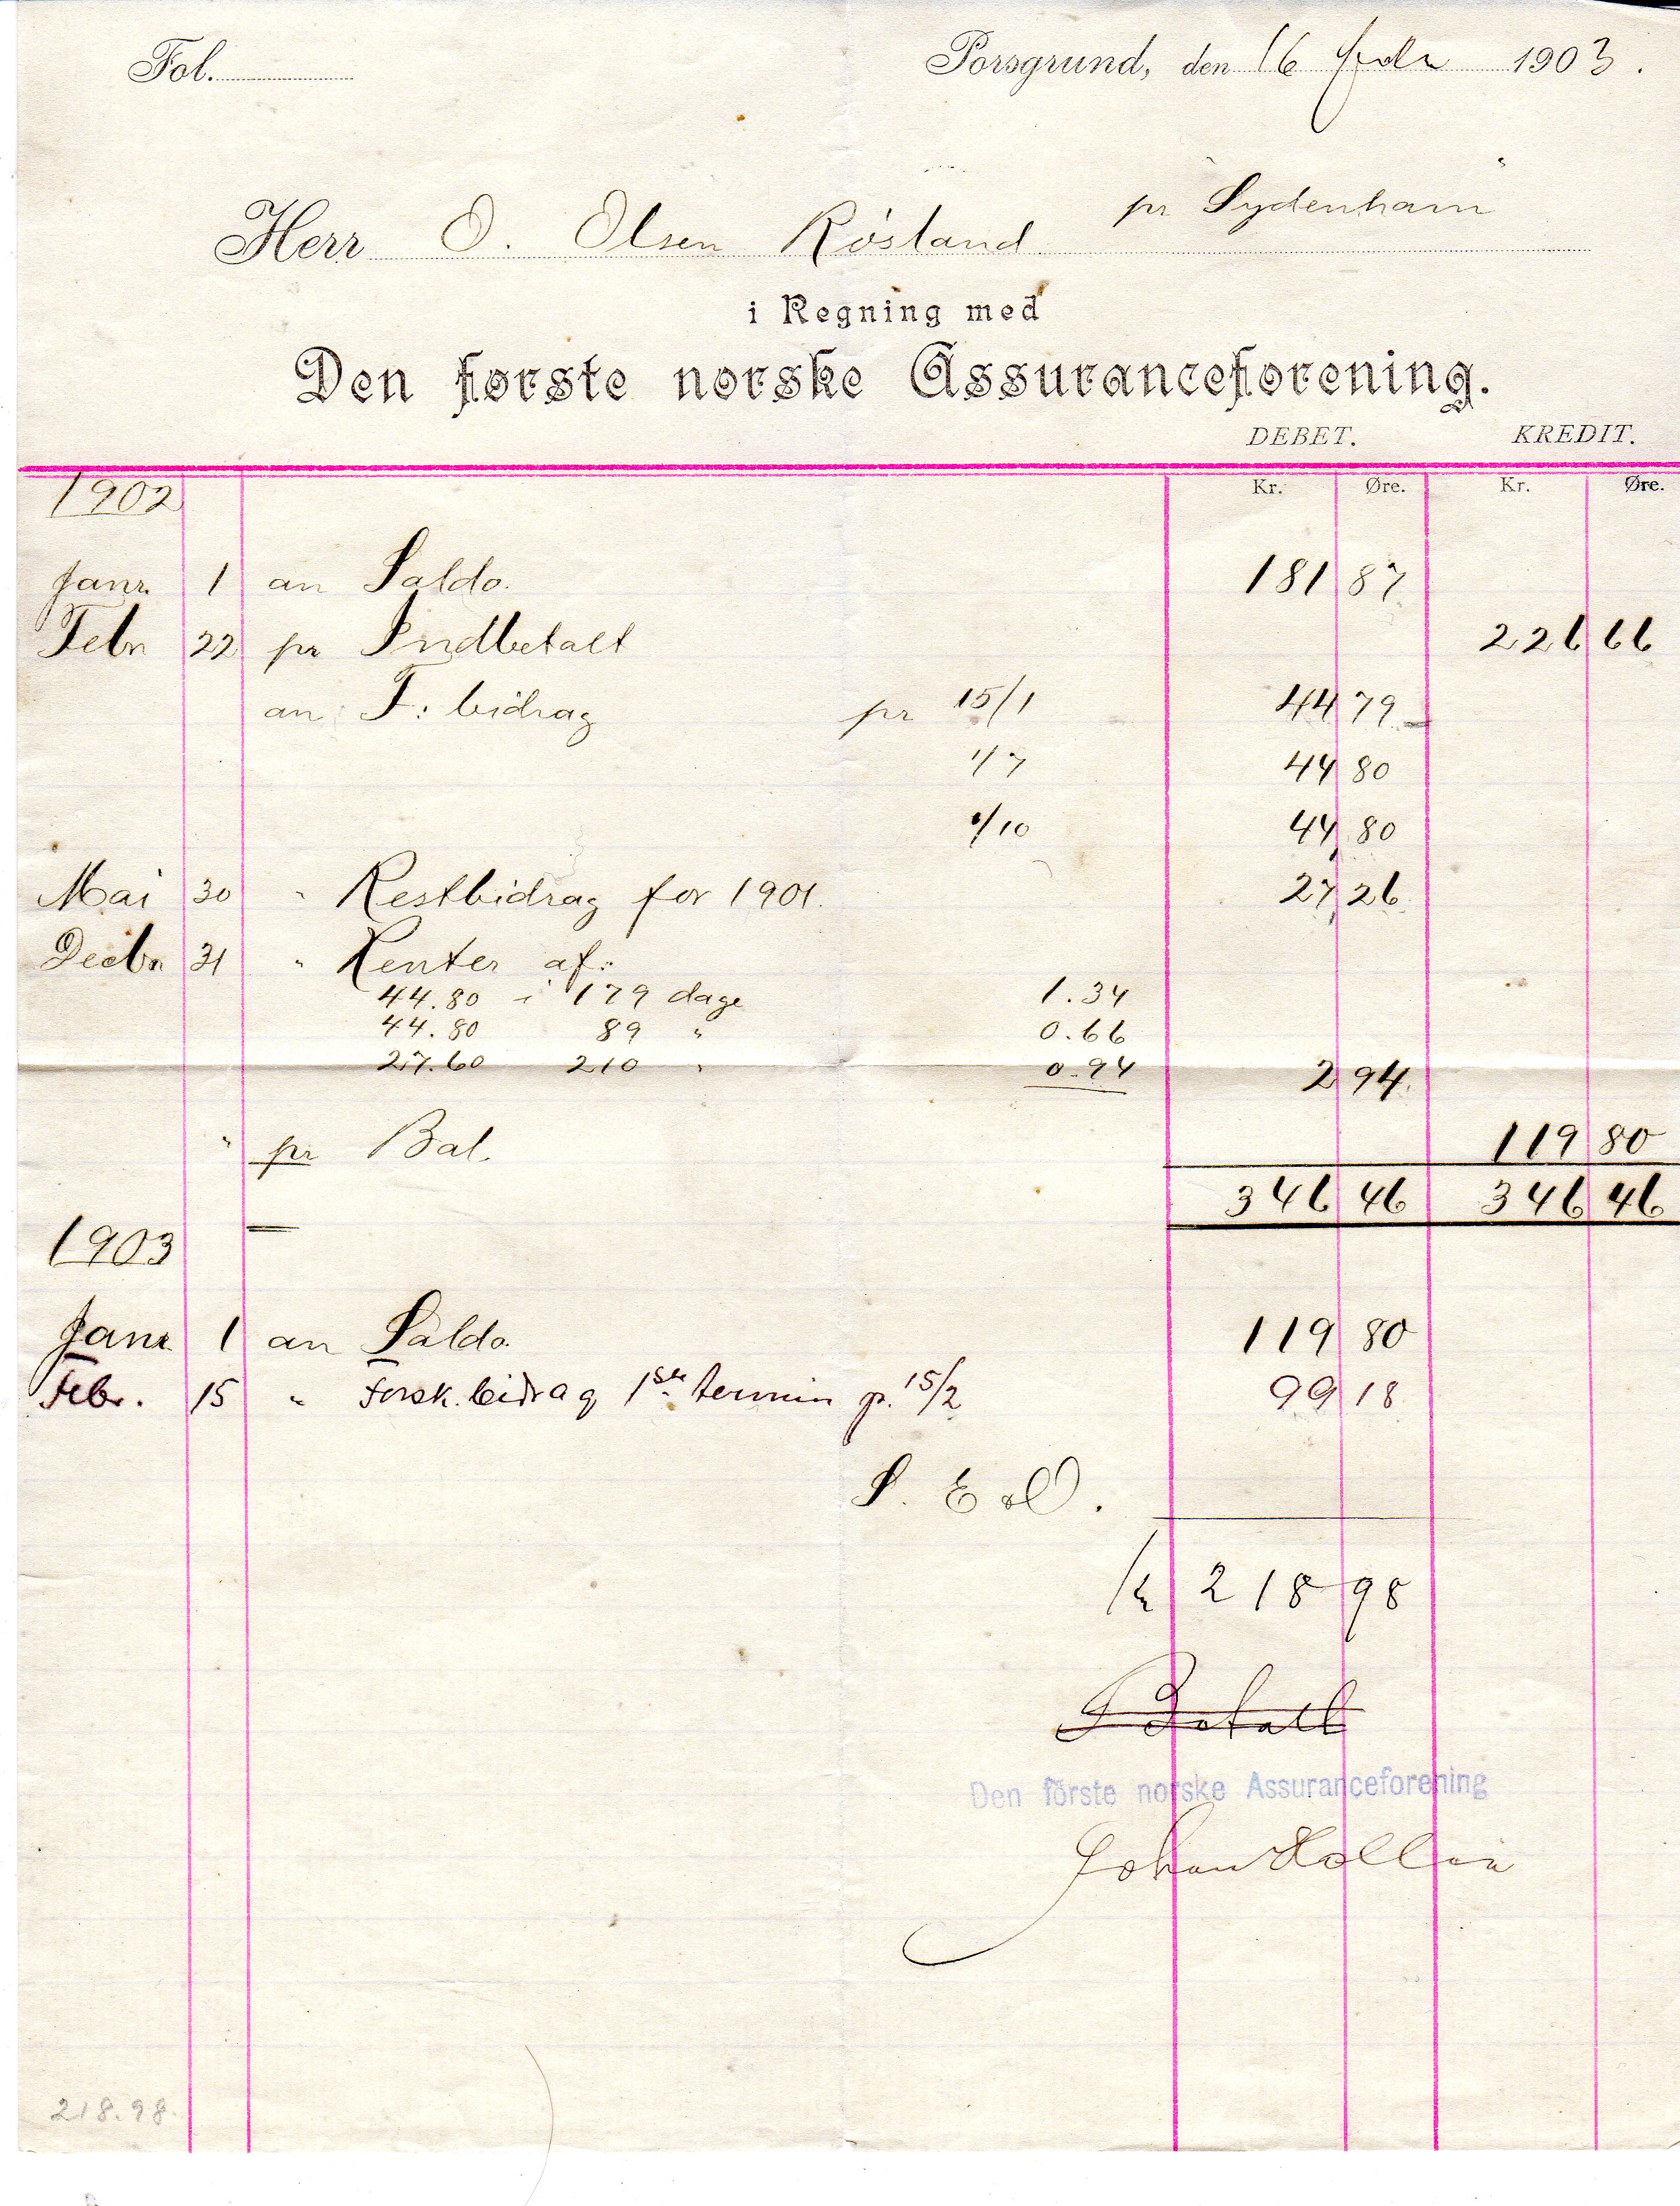 Den første norske assuransefprening  Porsgrund 1903